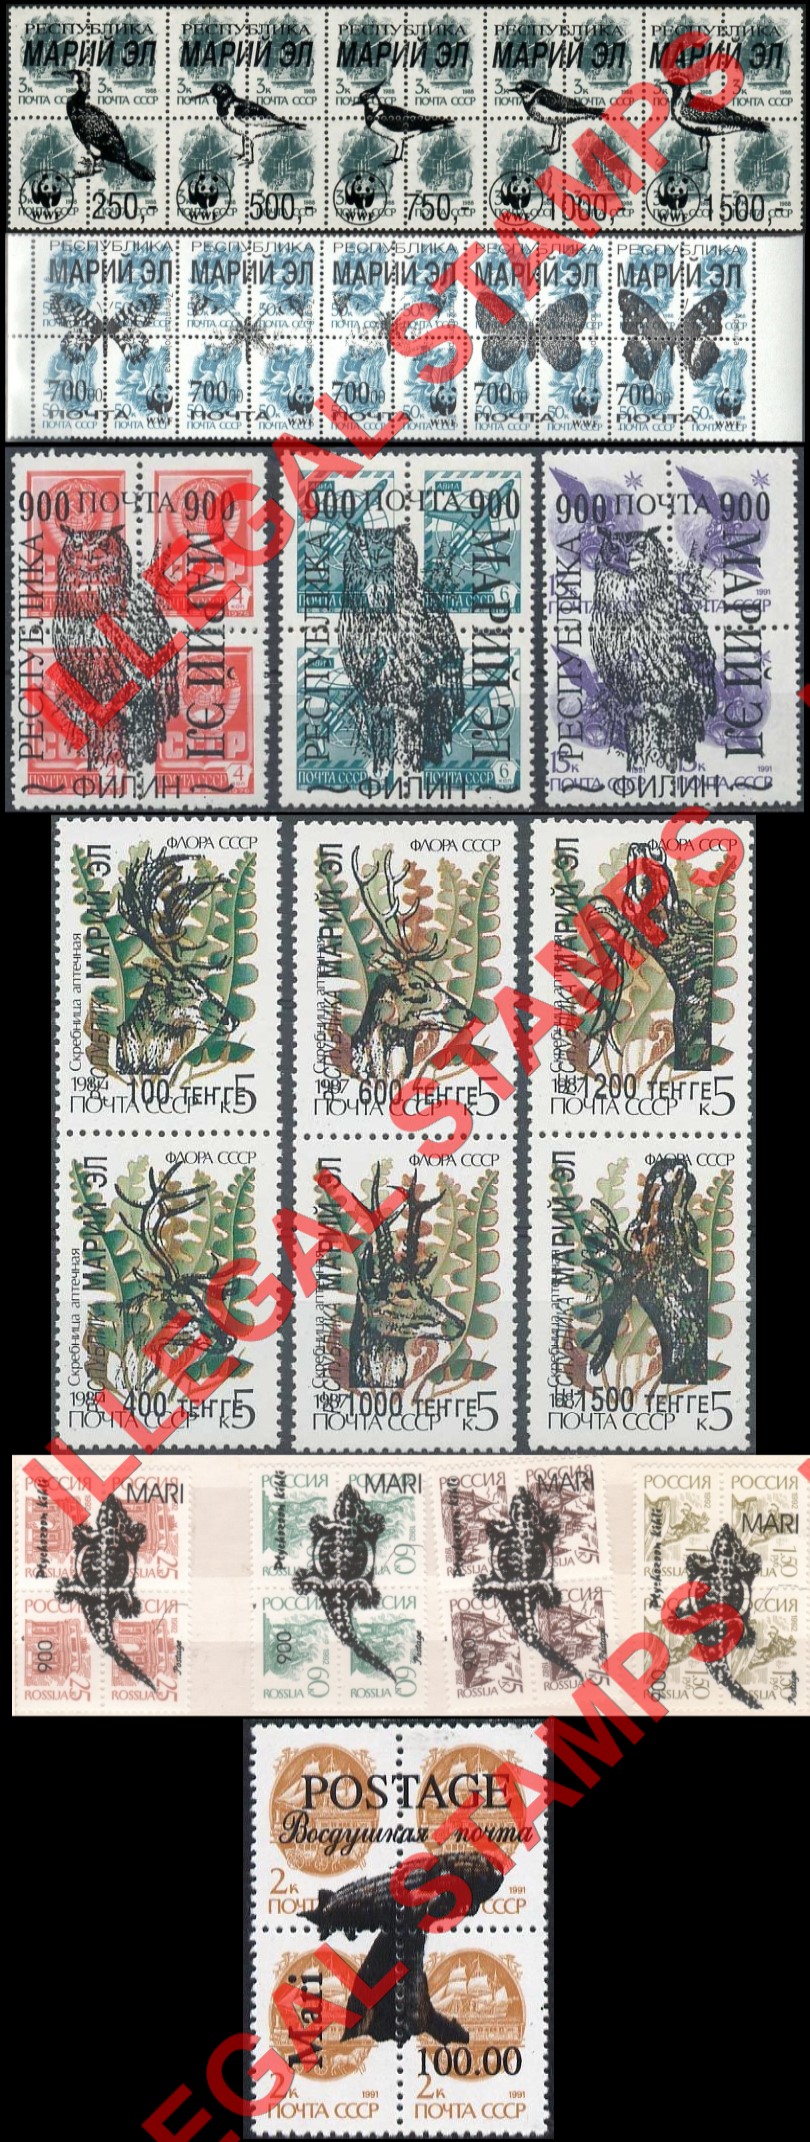 Mari-El Republic 1992-6 Counterfeit Illegal Stamps